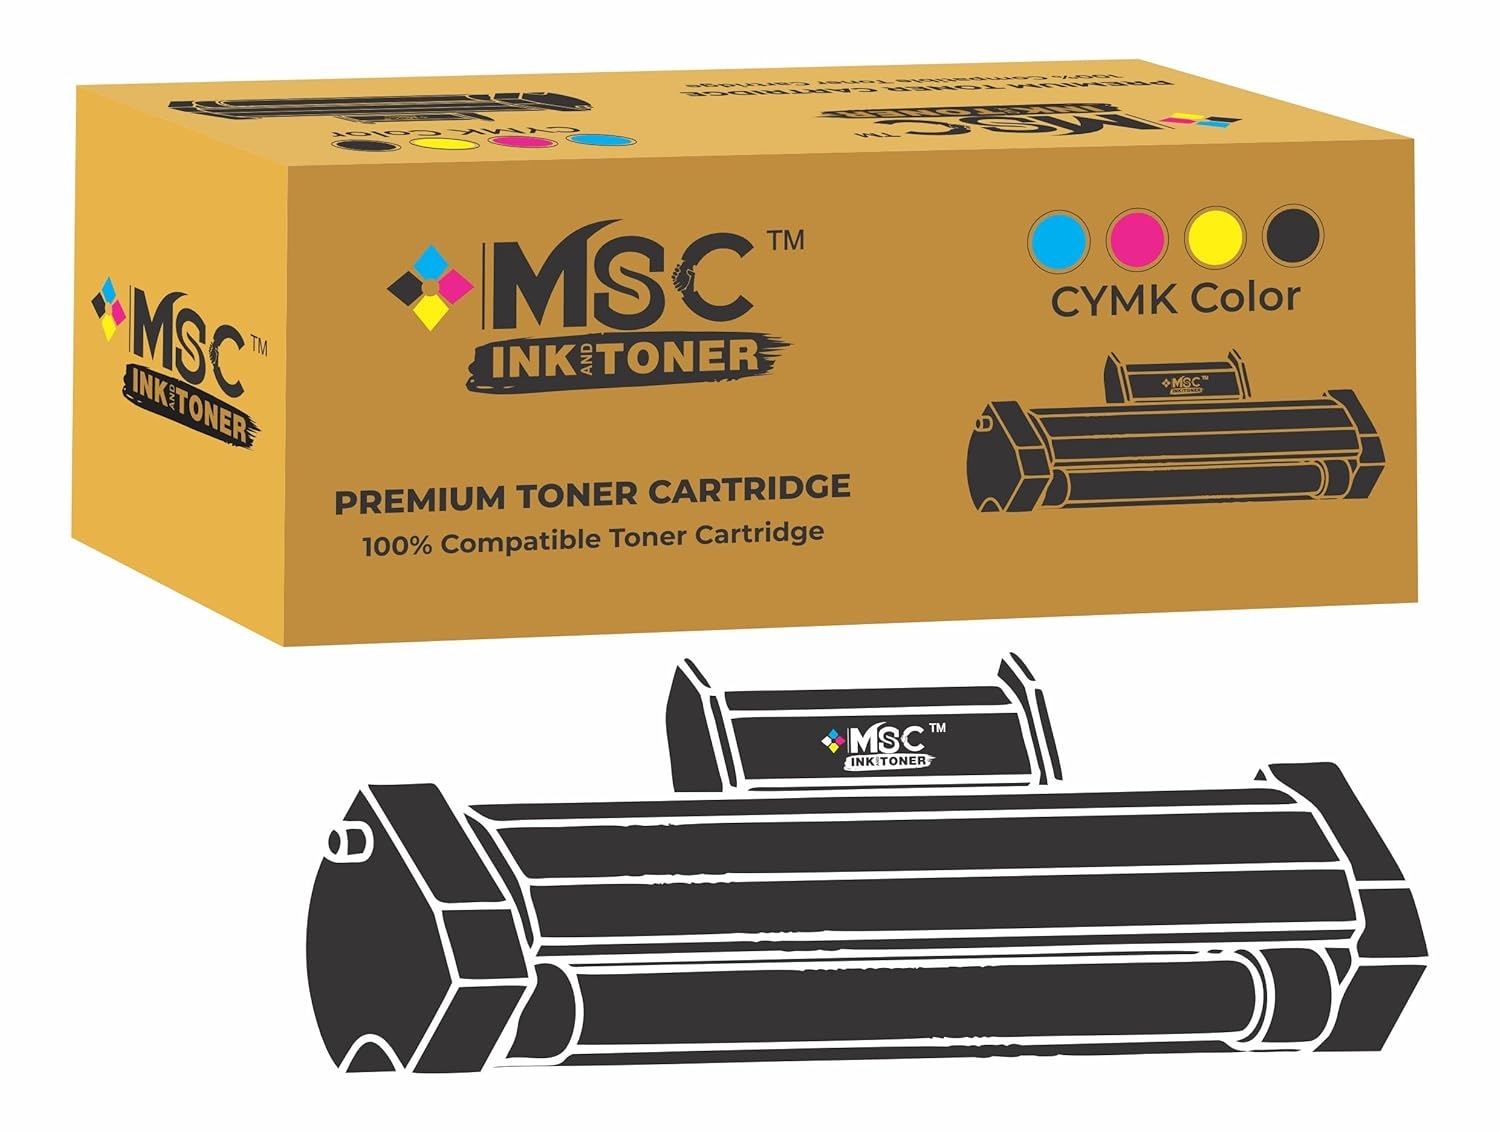 TN 267 Toner Cartridge for Brother HL-L3210CW, L3230CDN, L3270CDW, DCP-L3551CDW, MFC-L3735CDN, L3750CDW, L3770CDW - Cyan/Magenta/Black/Yellow